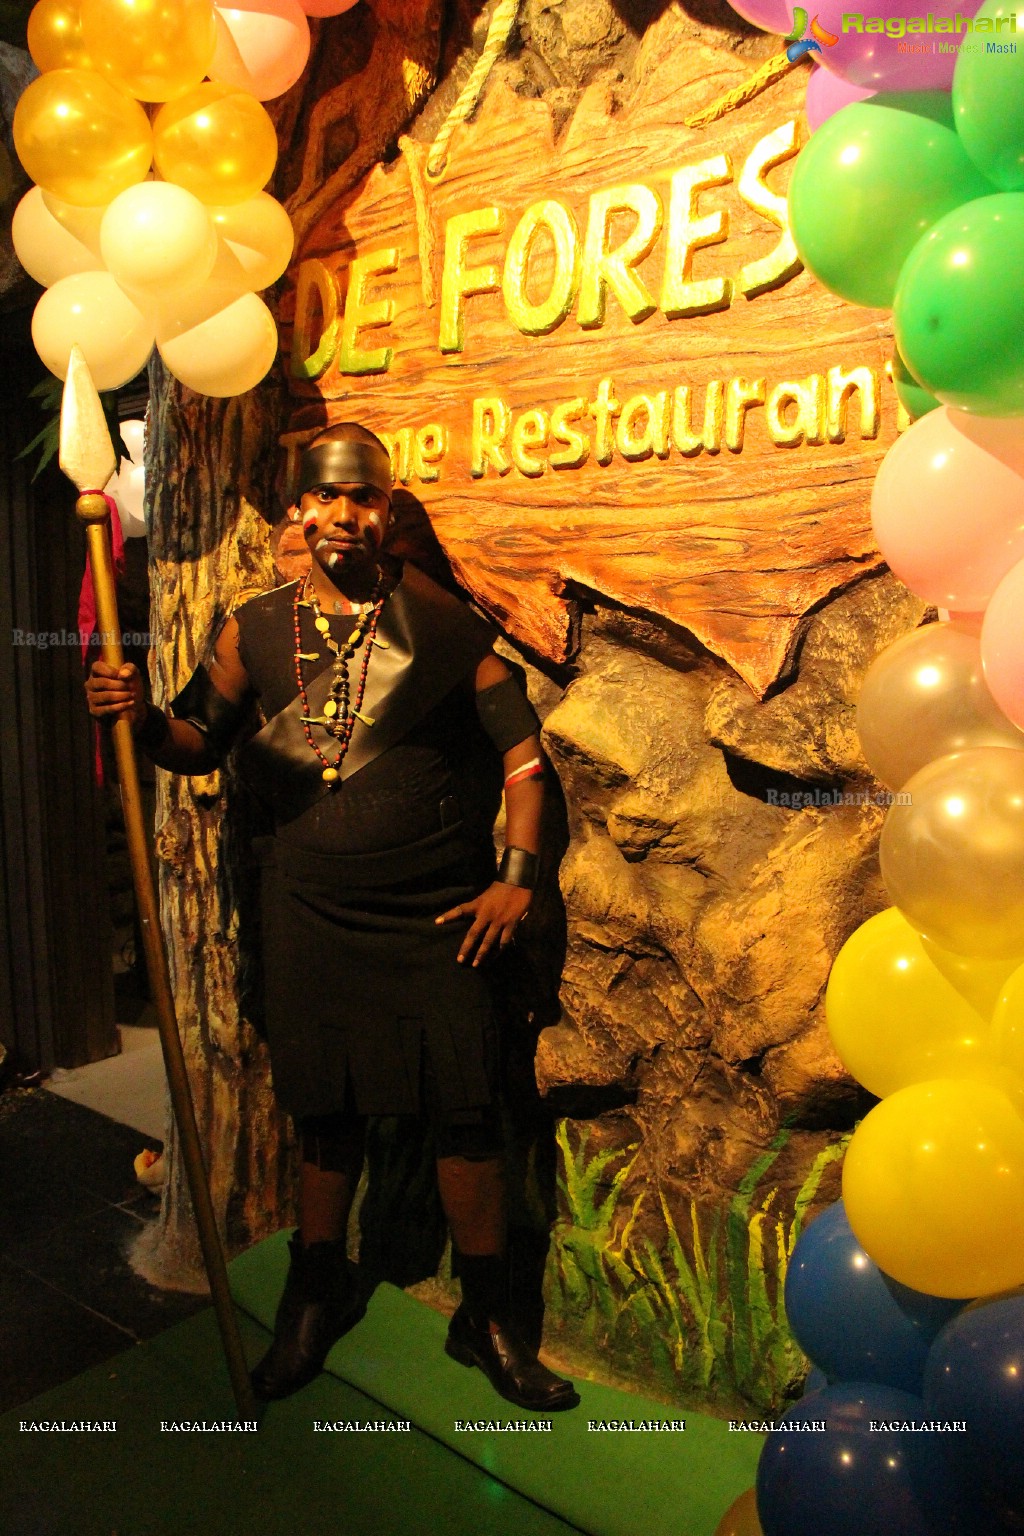 De Forest Theme Restaurant Launch